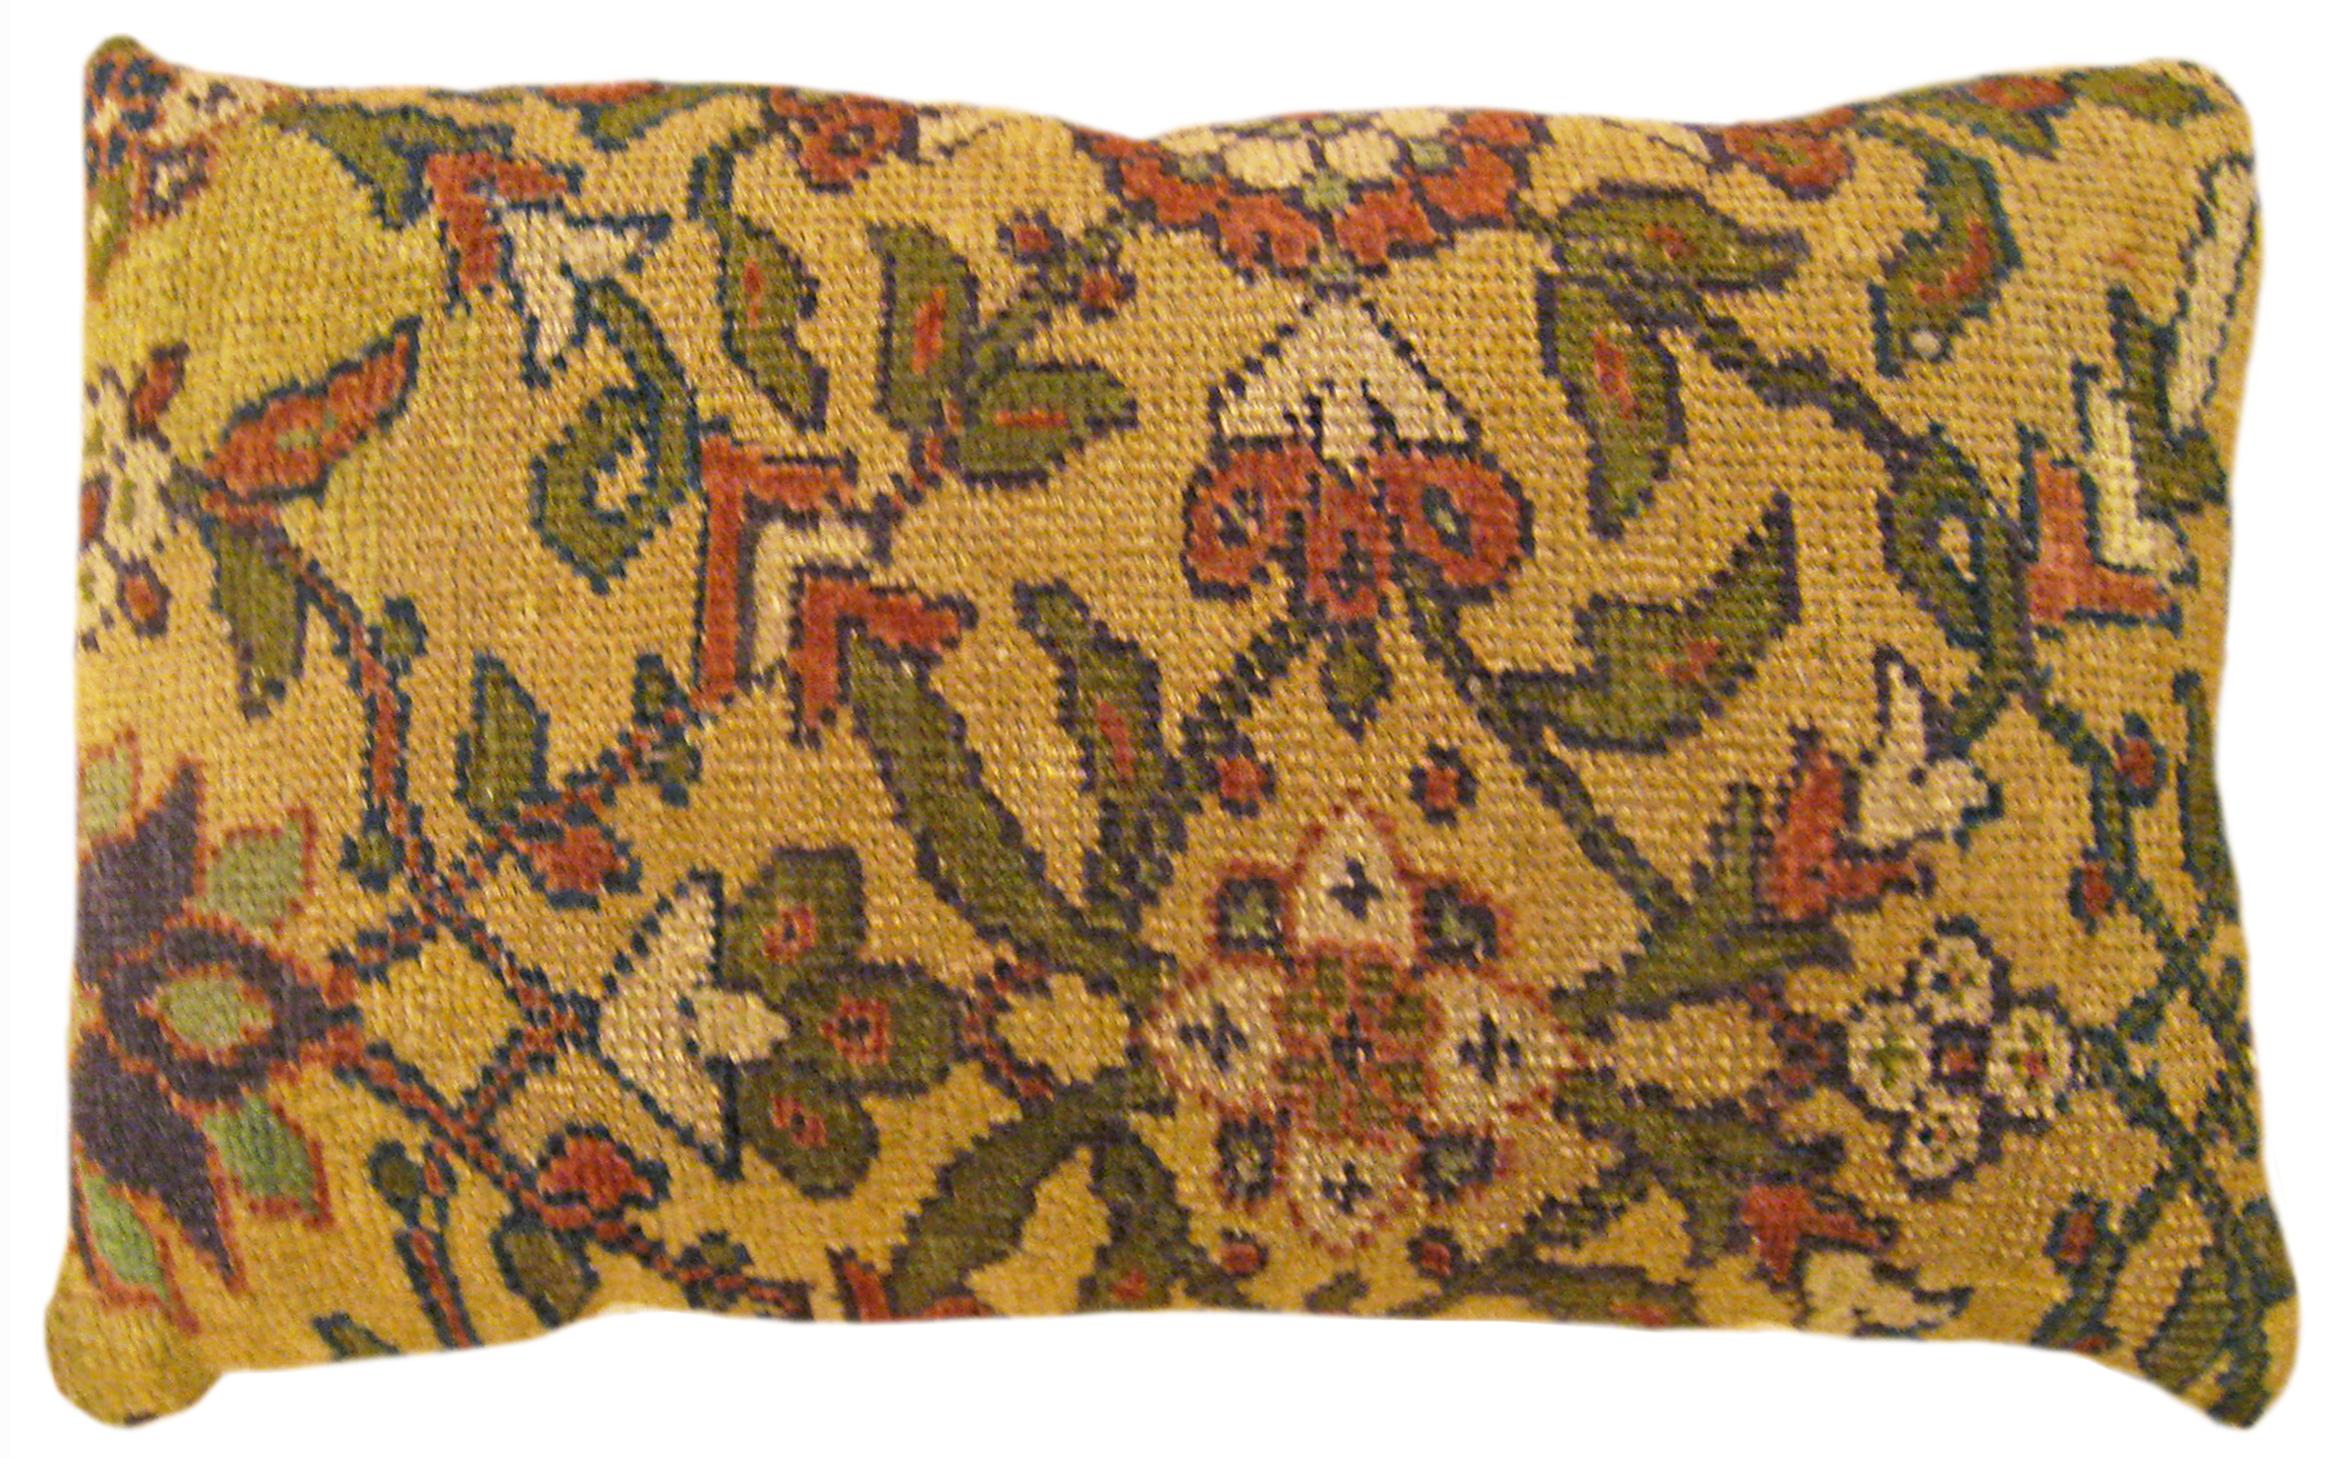 Dekoratives antikes persisches Sultanabad-Teppich Kissen mit floralen Elementen